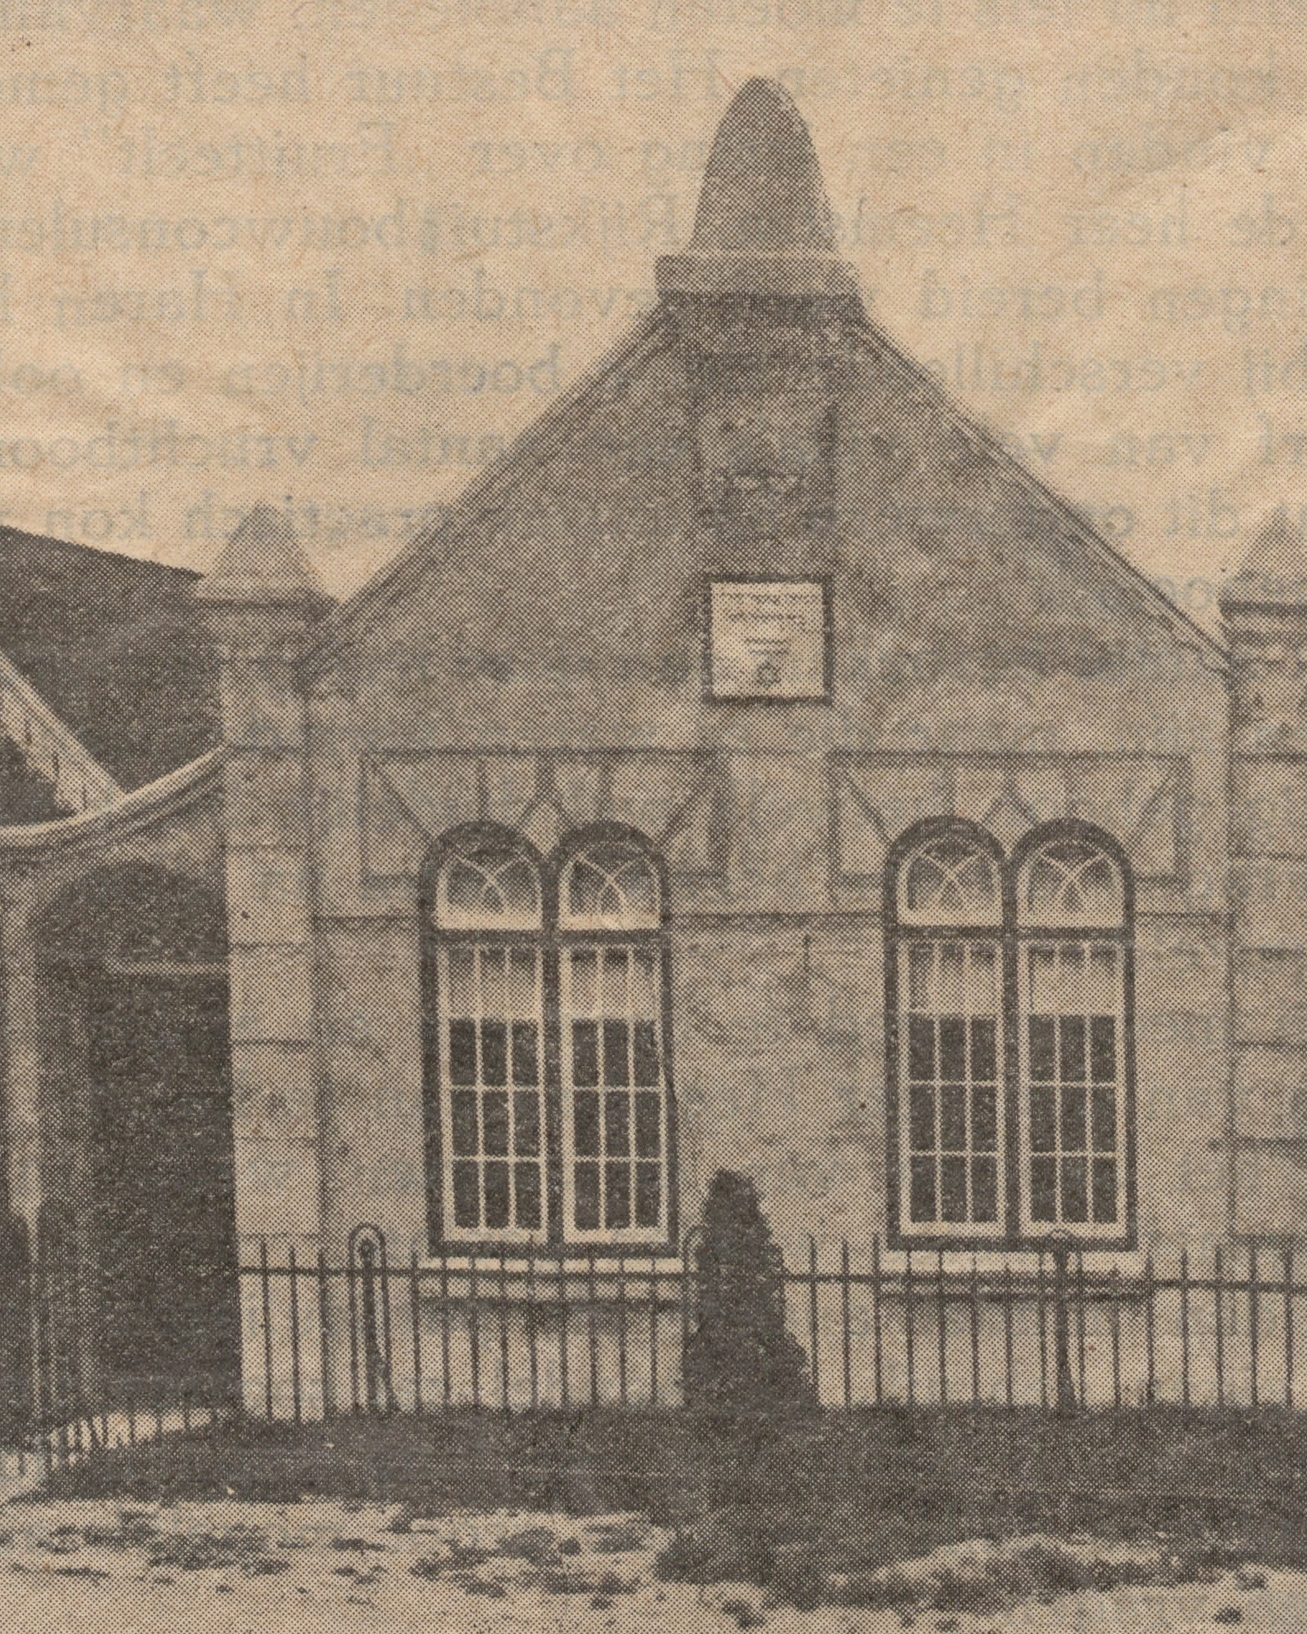 Oude (krantenknipsel) foto van de synagoge met gedenkbord. Bedumerweg 24, 1926. Bron: RHC GA, Groninger Archieven, Beeldbank Groningen. Gepubliceerd in Haren Vooruit, 22 oktober 1926.